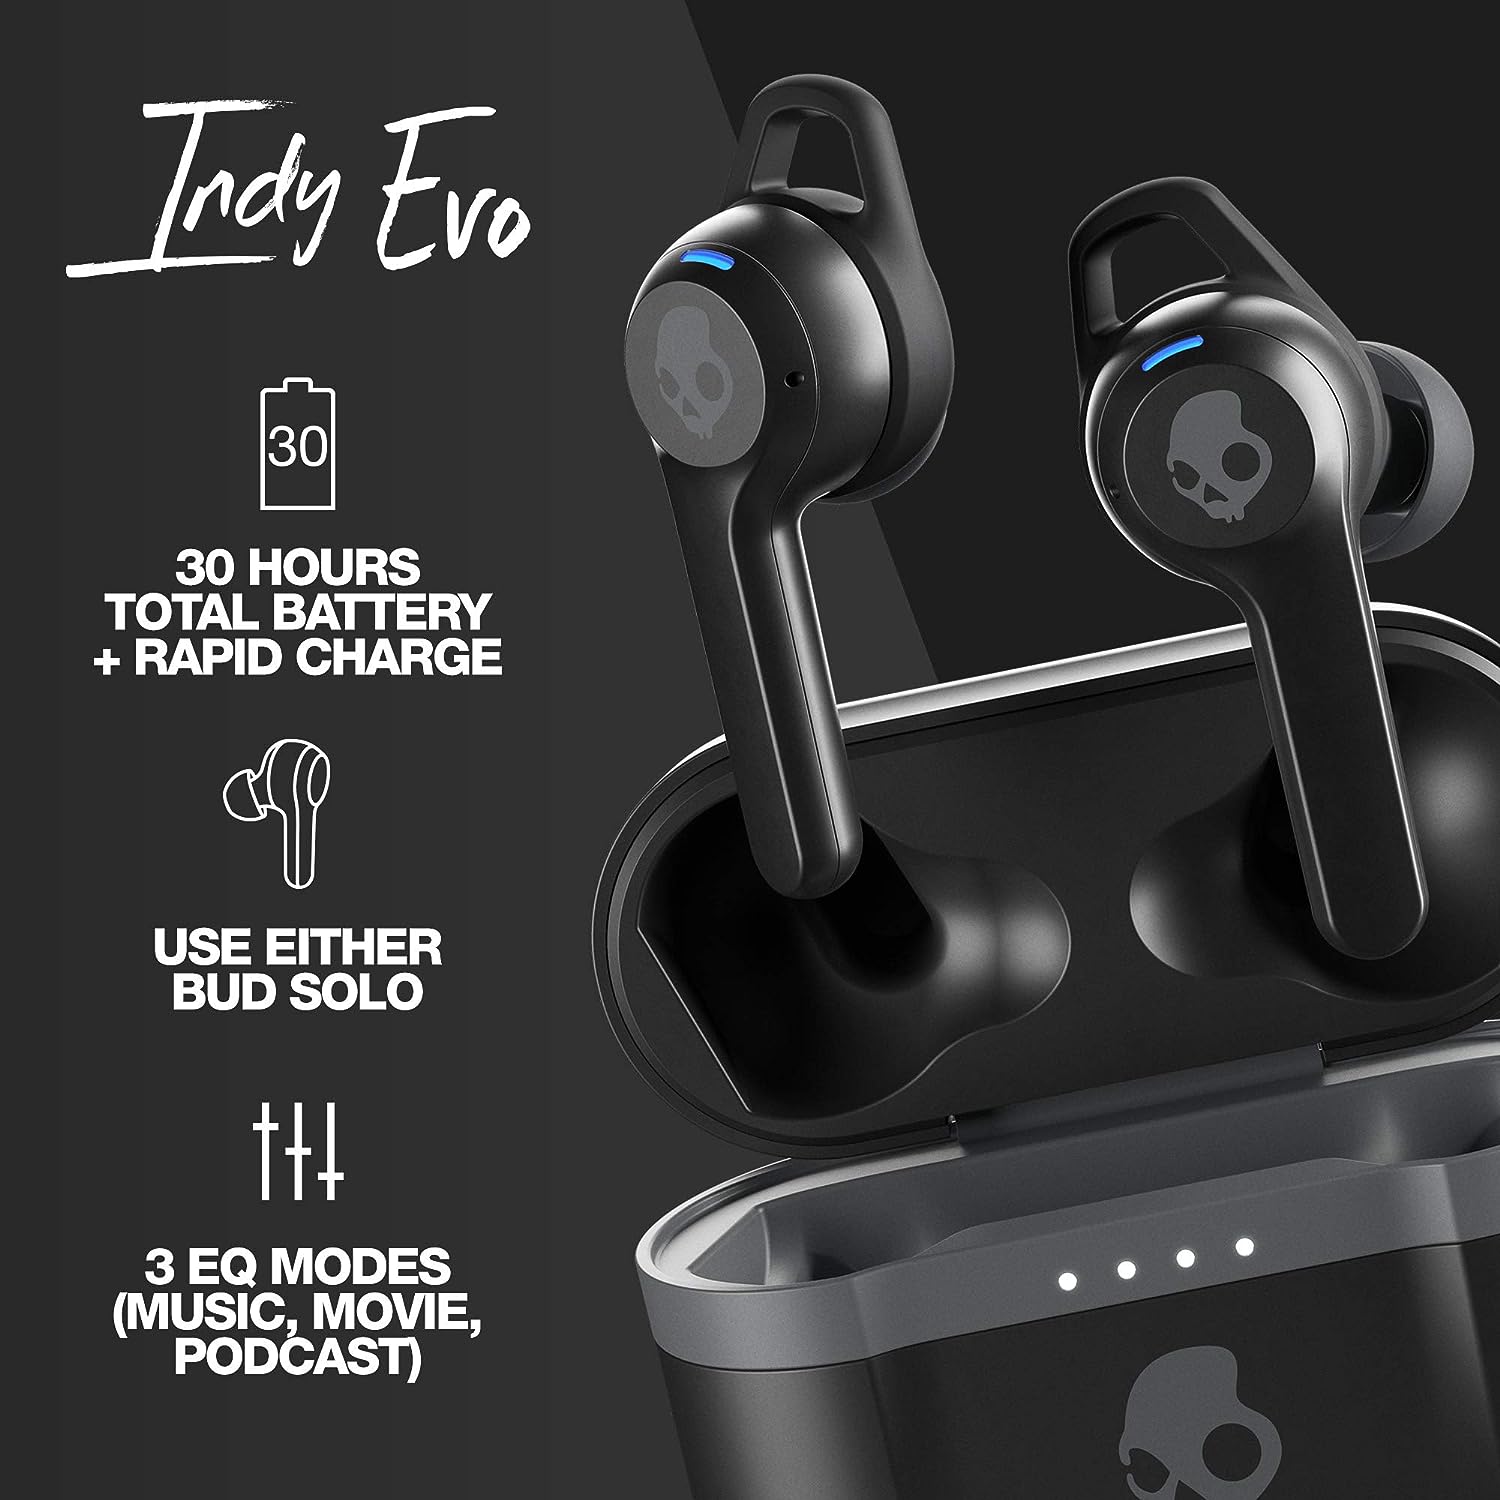 Skullcandy Indy Evo True Wireless In-Ear Headphones - Black - Refurbished Excellent